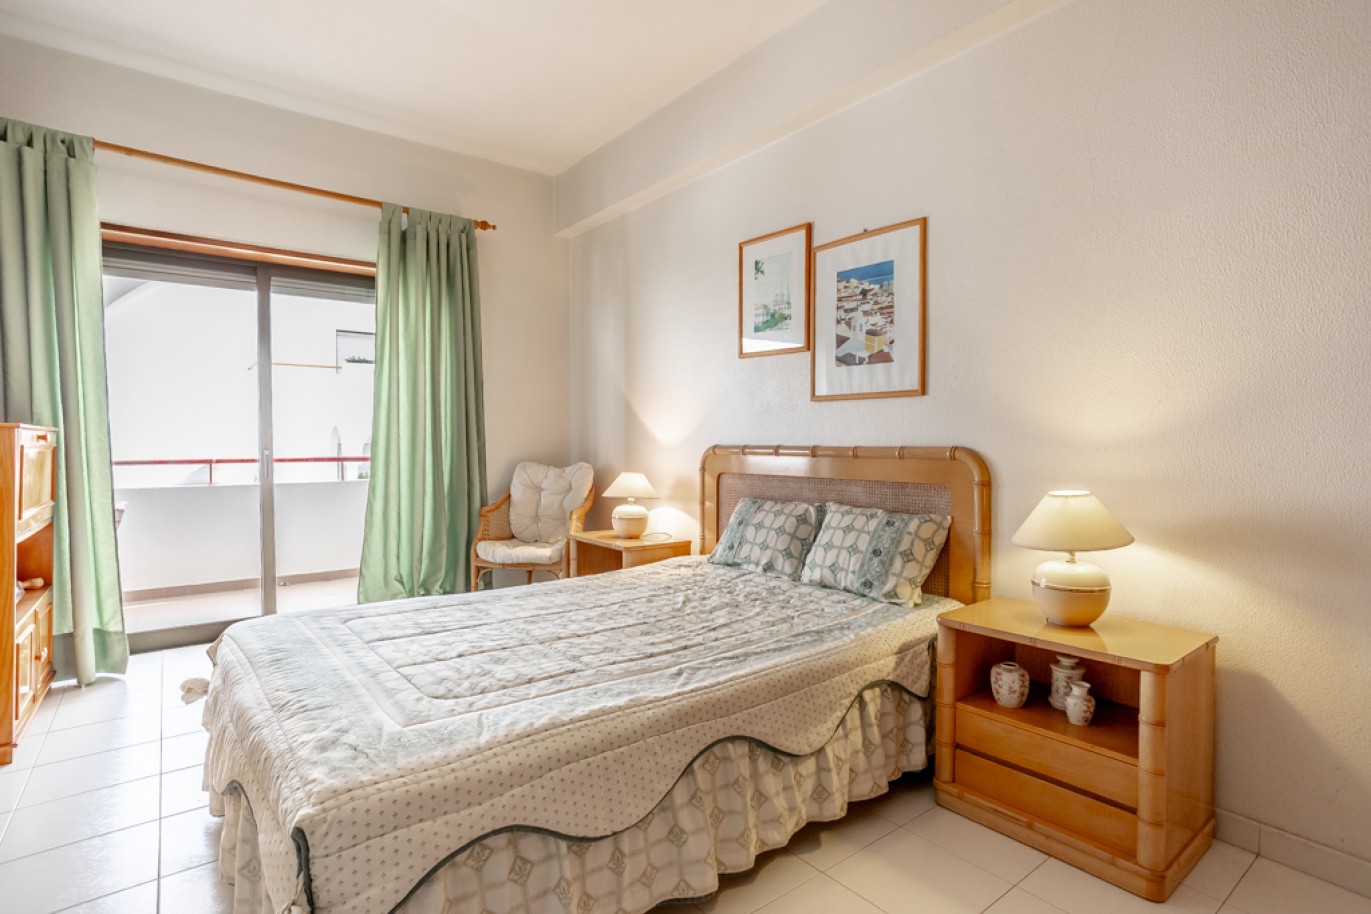 Apartamento com 1+1 quartos, com vista mar, para venda em Porches, Algarve_257037